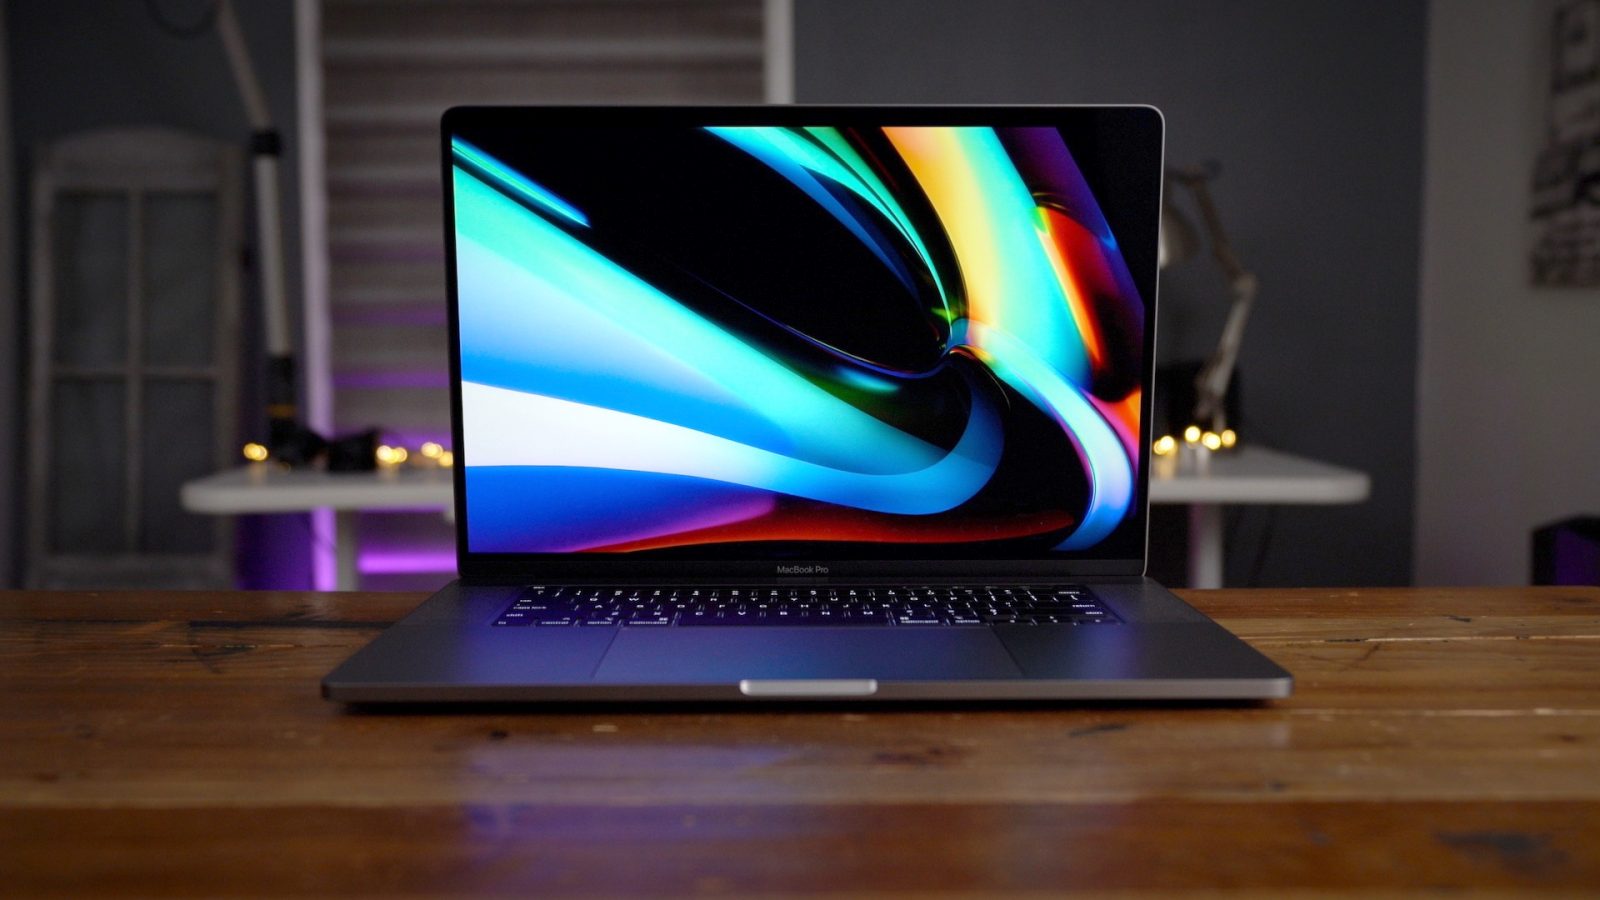 MacBook Pro 16 inch: Những cải tiến nổi bật so với các dòng Macbook